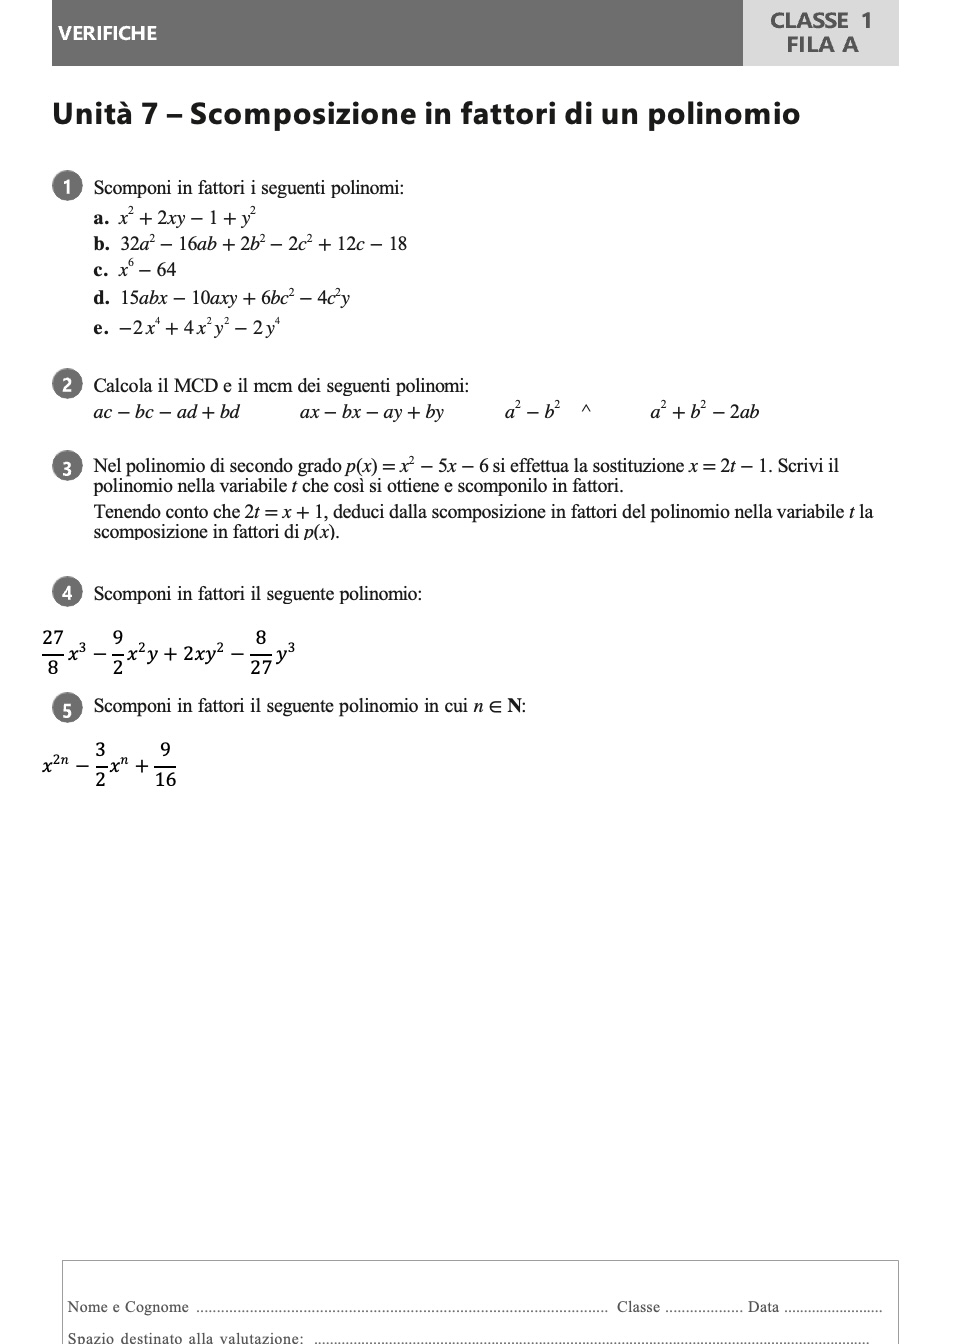 Scomposizione in fattori di un polinomio - Fila A